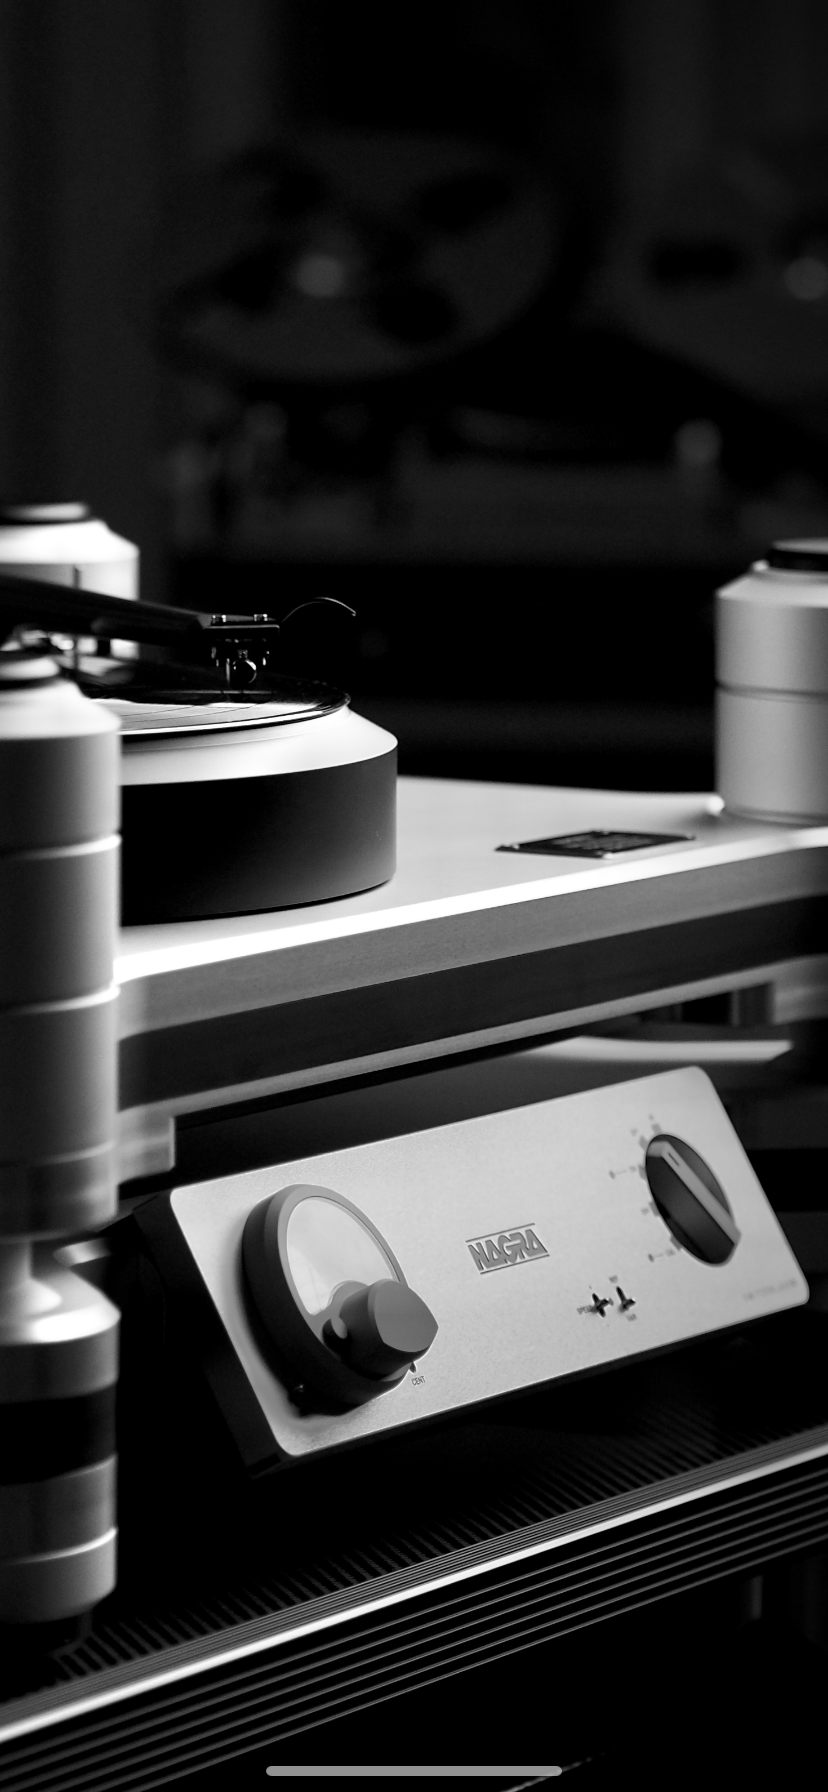 享受至真至纯的模拟感 | Nagra 70周年限量版黑胶唱盘